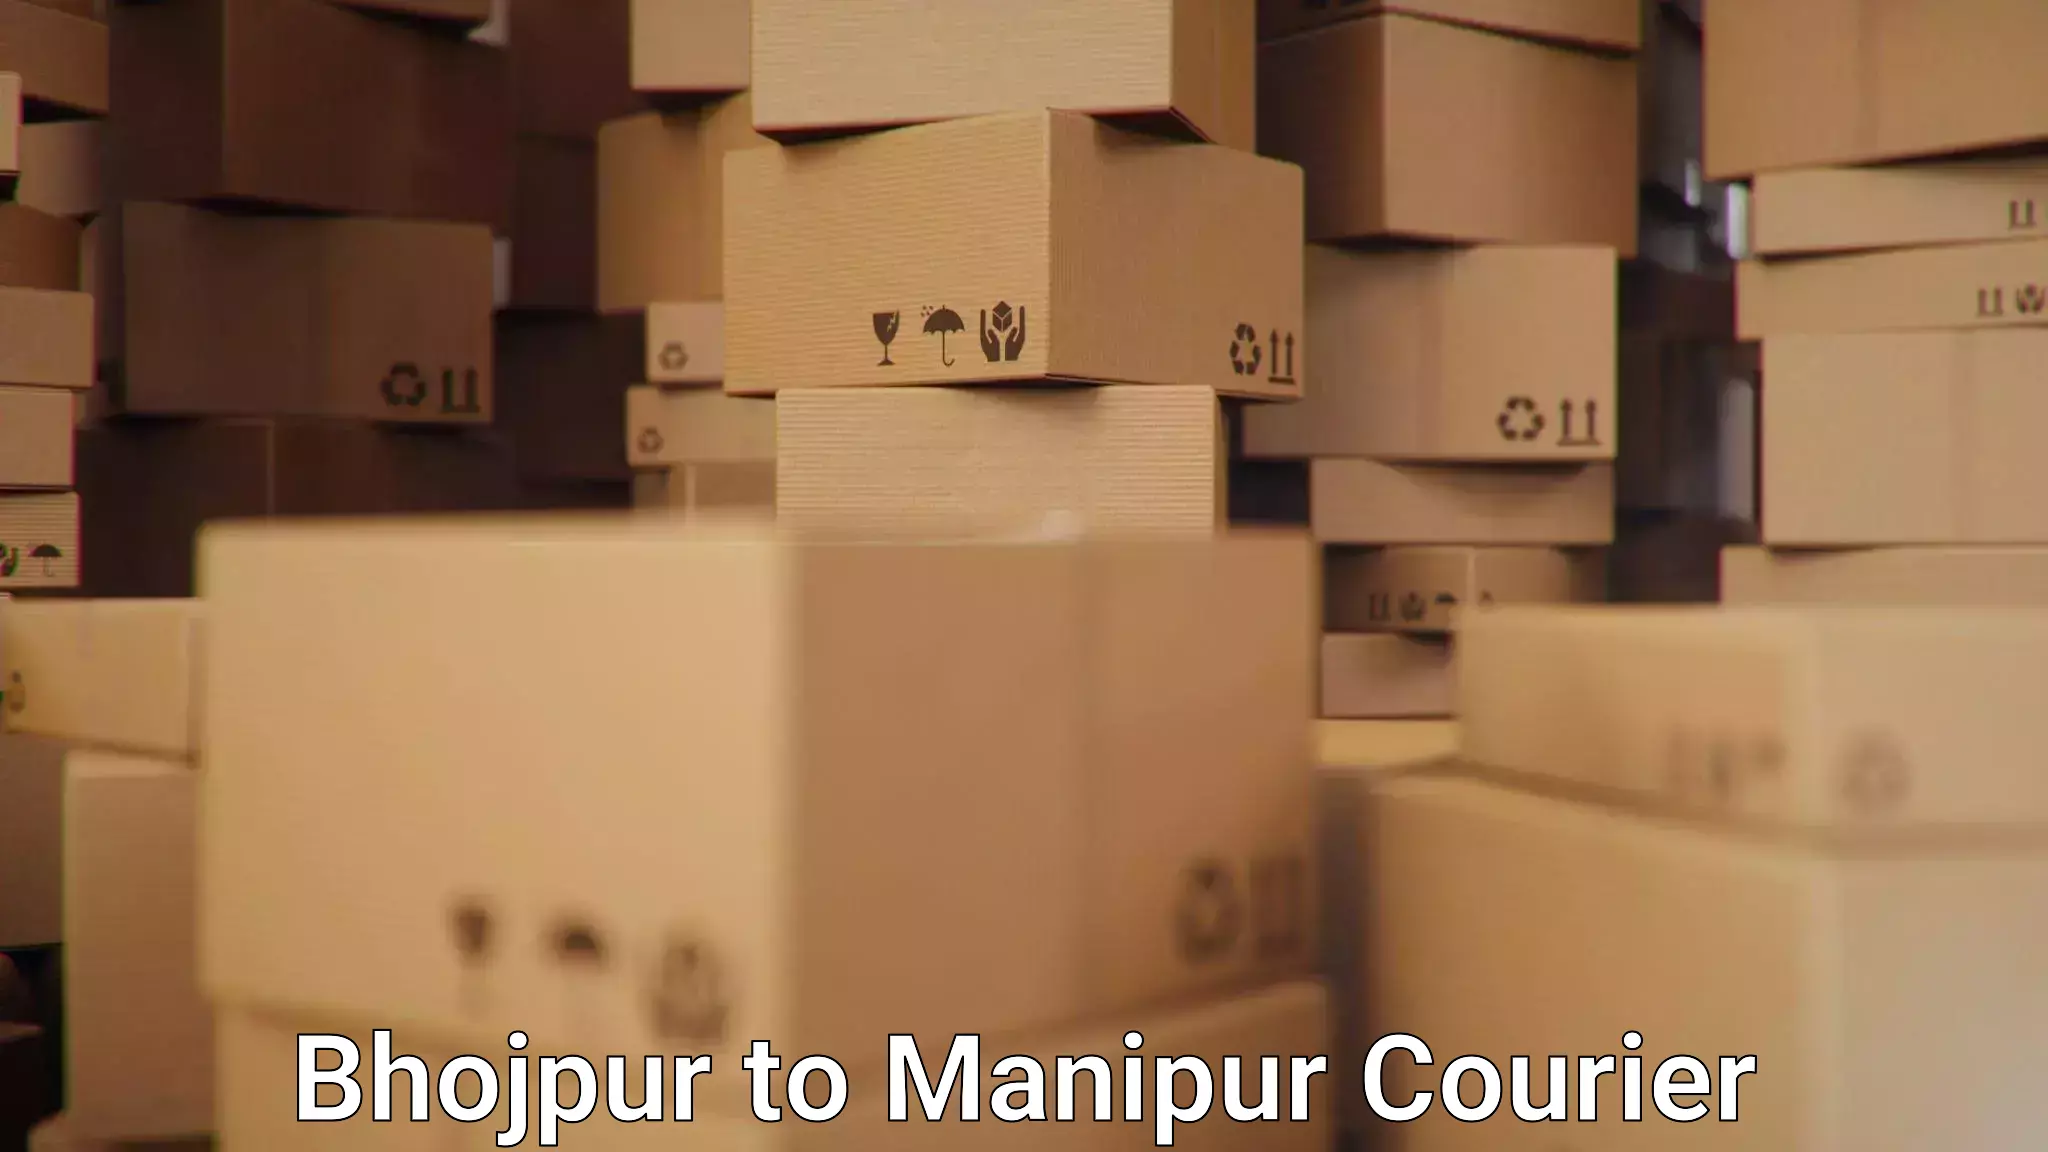 Bulk shipment Bhojpur to Manipur